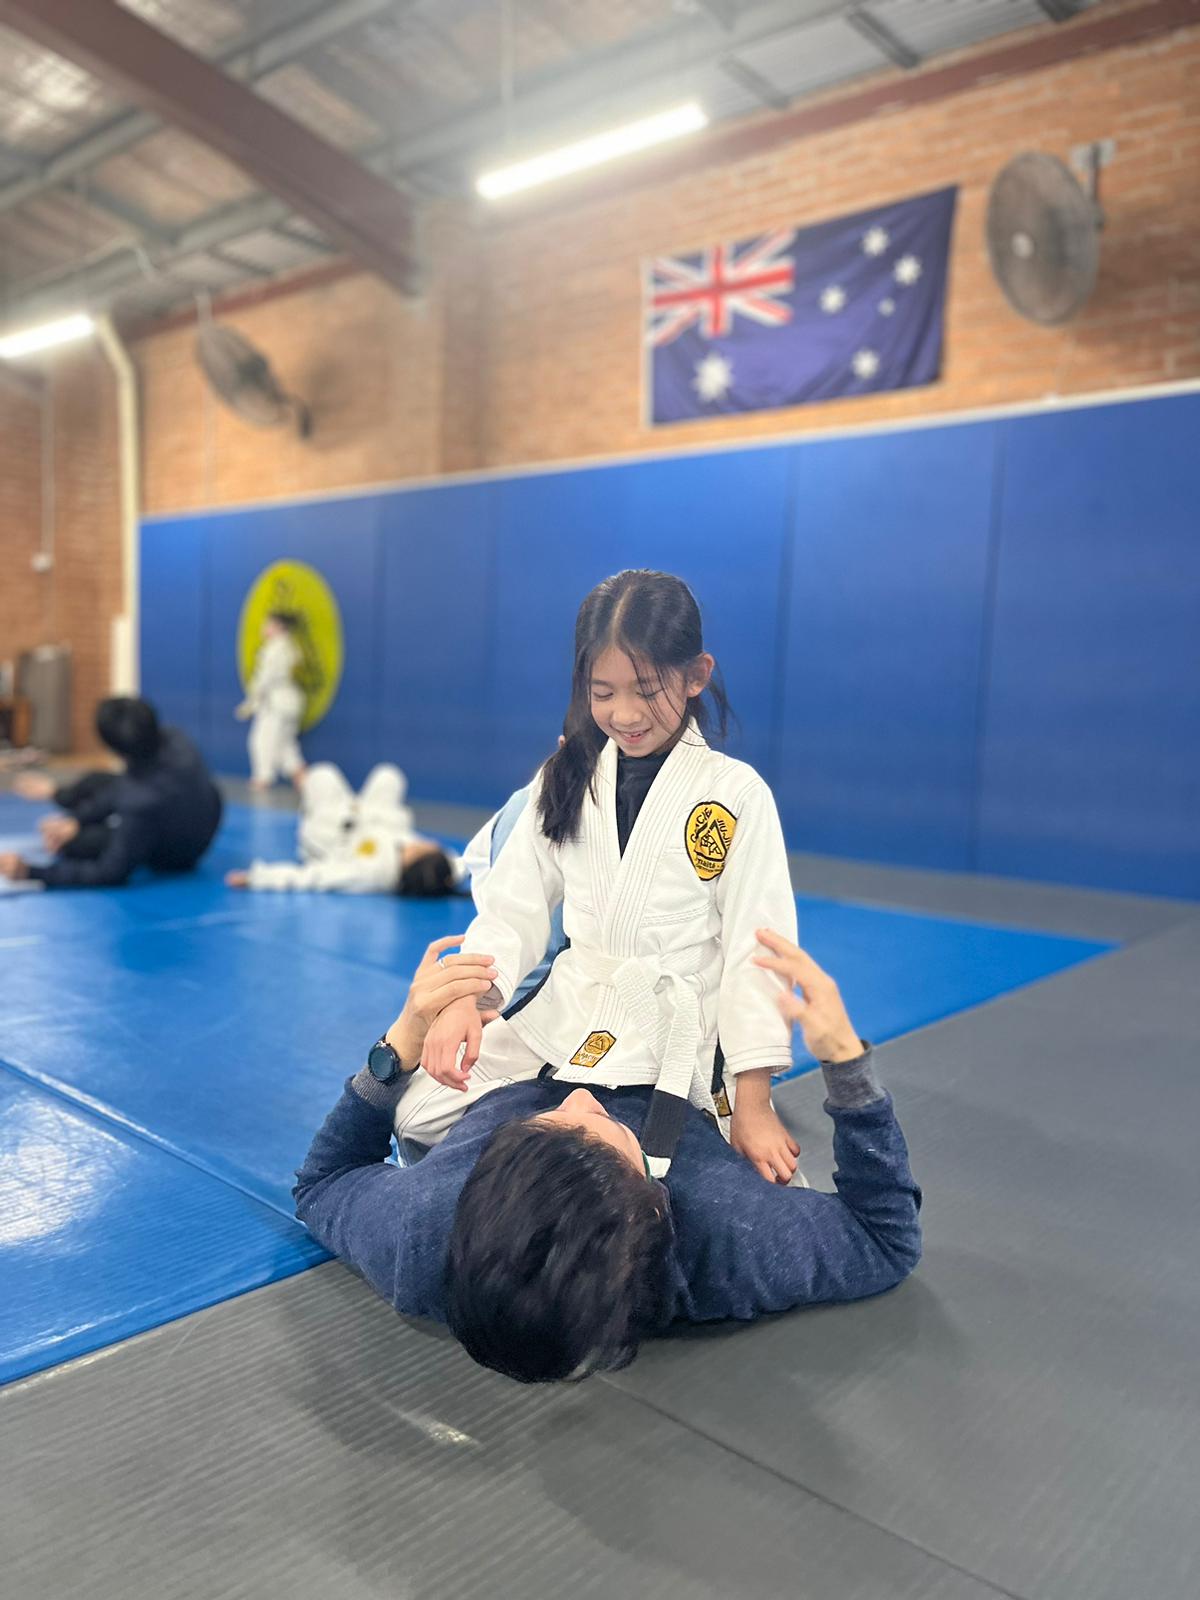 Father and daughter doing Jiu Jitsu